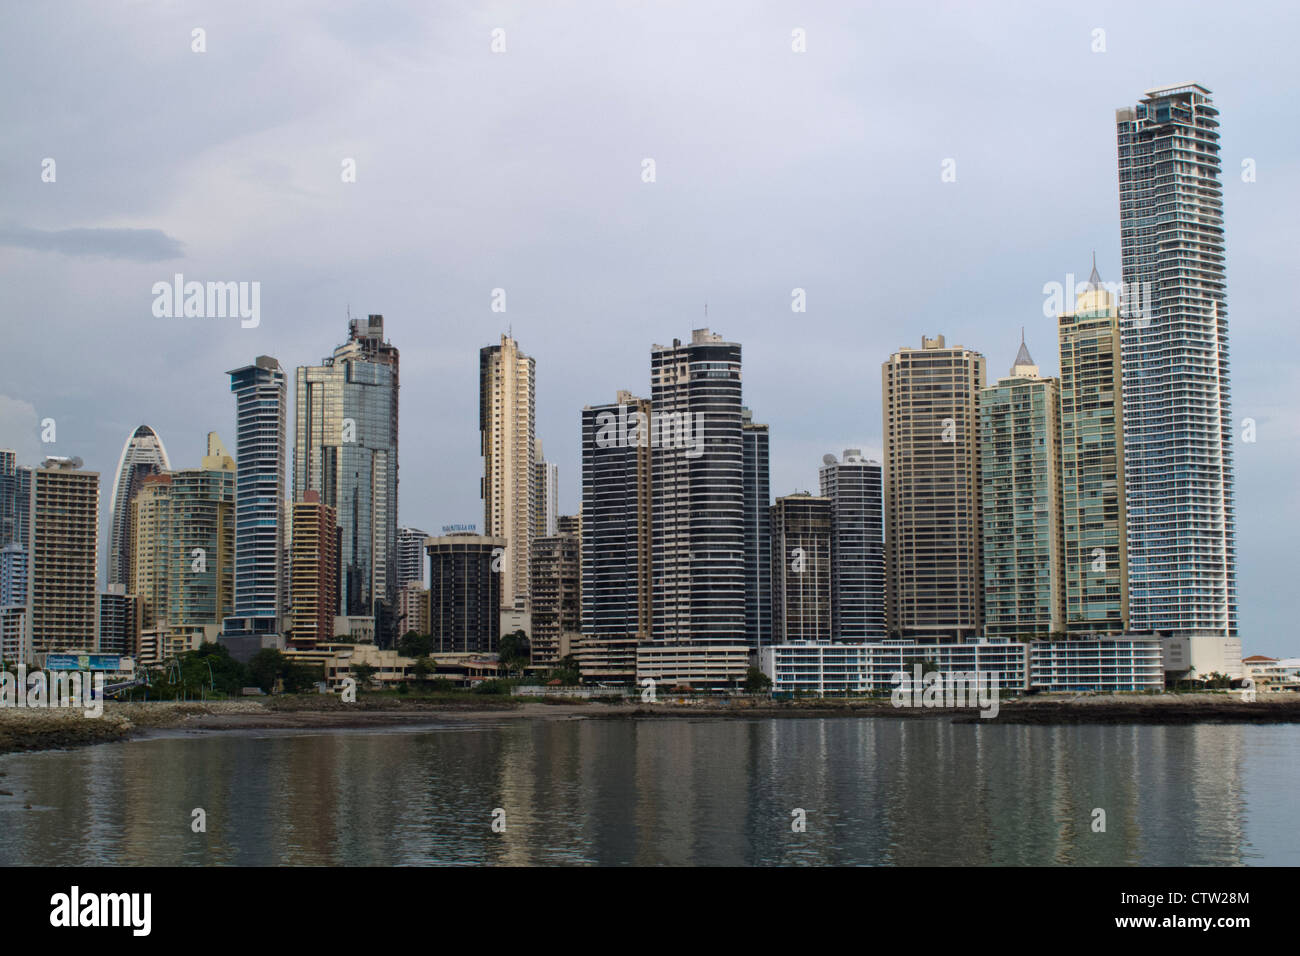 Gesamtansicht der Wolkenkratzer / Skyline mit Bucht / Wasser, Panama City, Panama Stockfoto